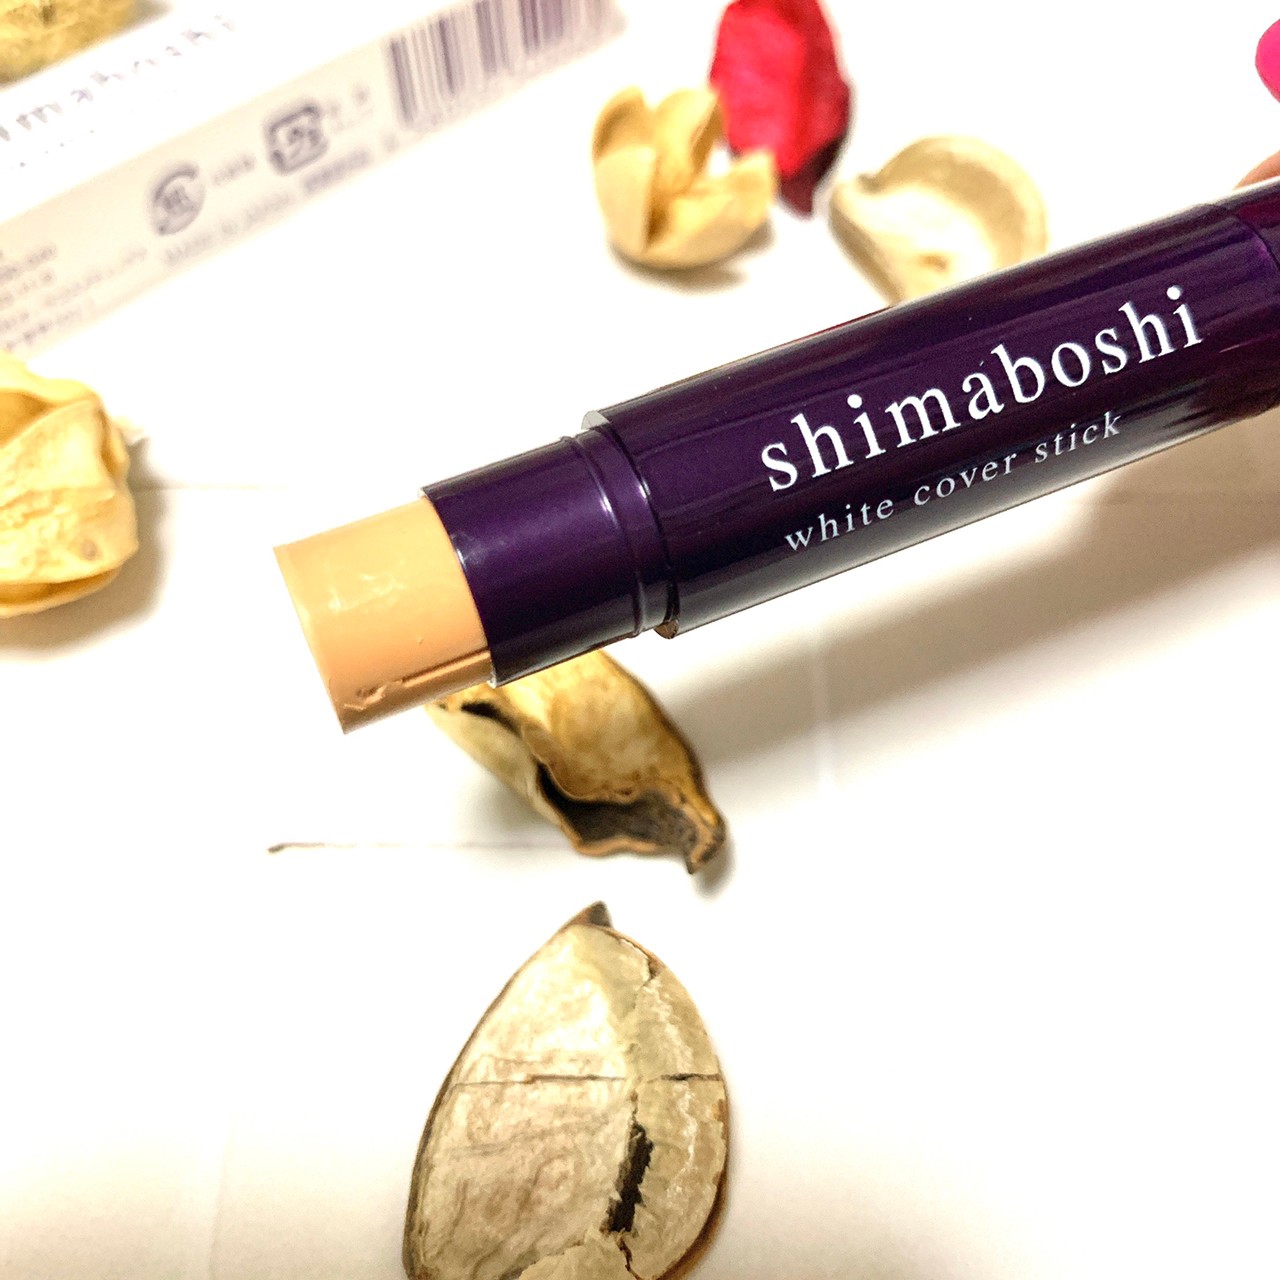 shimaboshi(シマボシ) ホワイトカバースティックの良い点・メリットに関するkana_cafe_timeさんの口コミ画像2